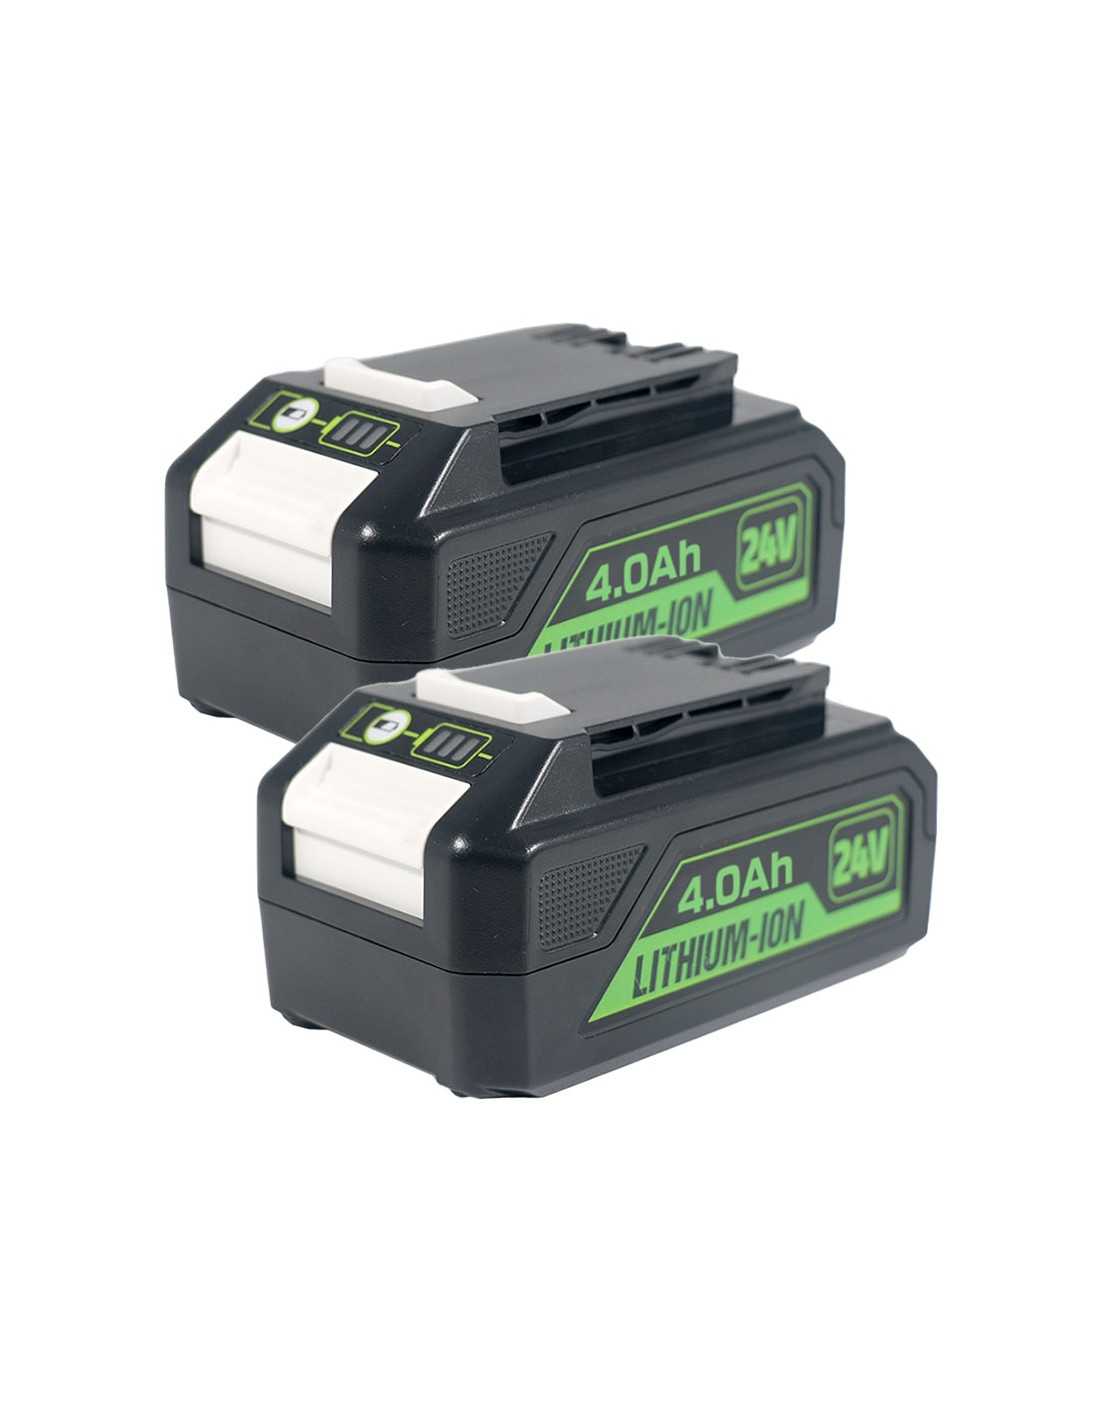 Pour remplacement de batterie Li-ion Greenworks 24 V 4,0Ah BAG709 (paquet double)